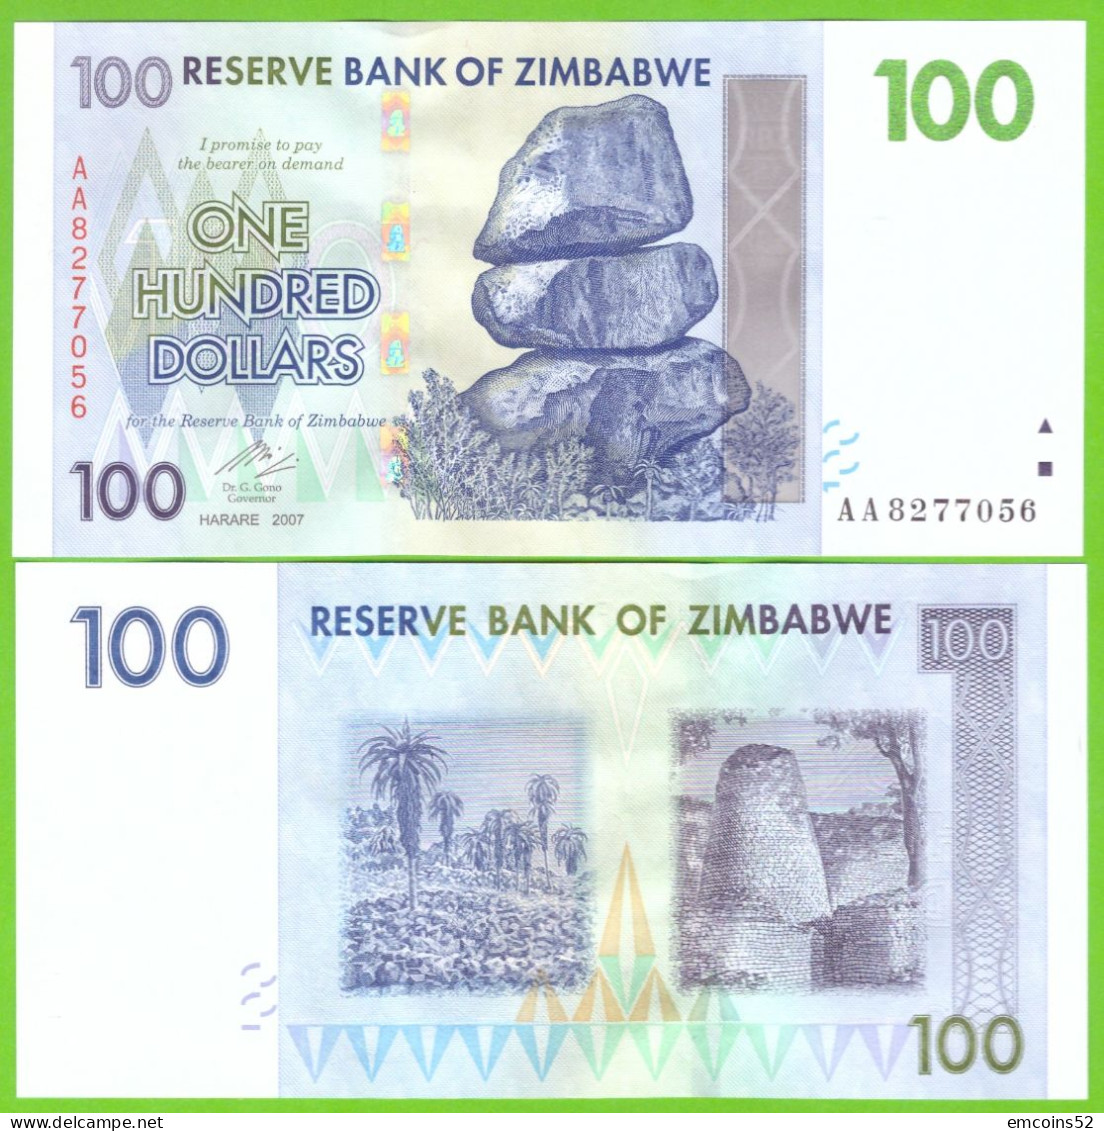 ZIMBABWE 100 DOLLARS 2007  P-69  UNC - Zimbabwe